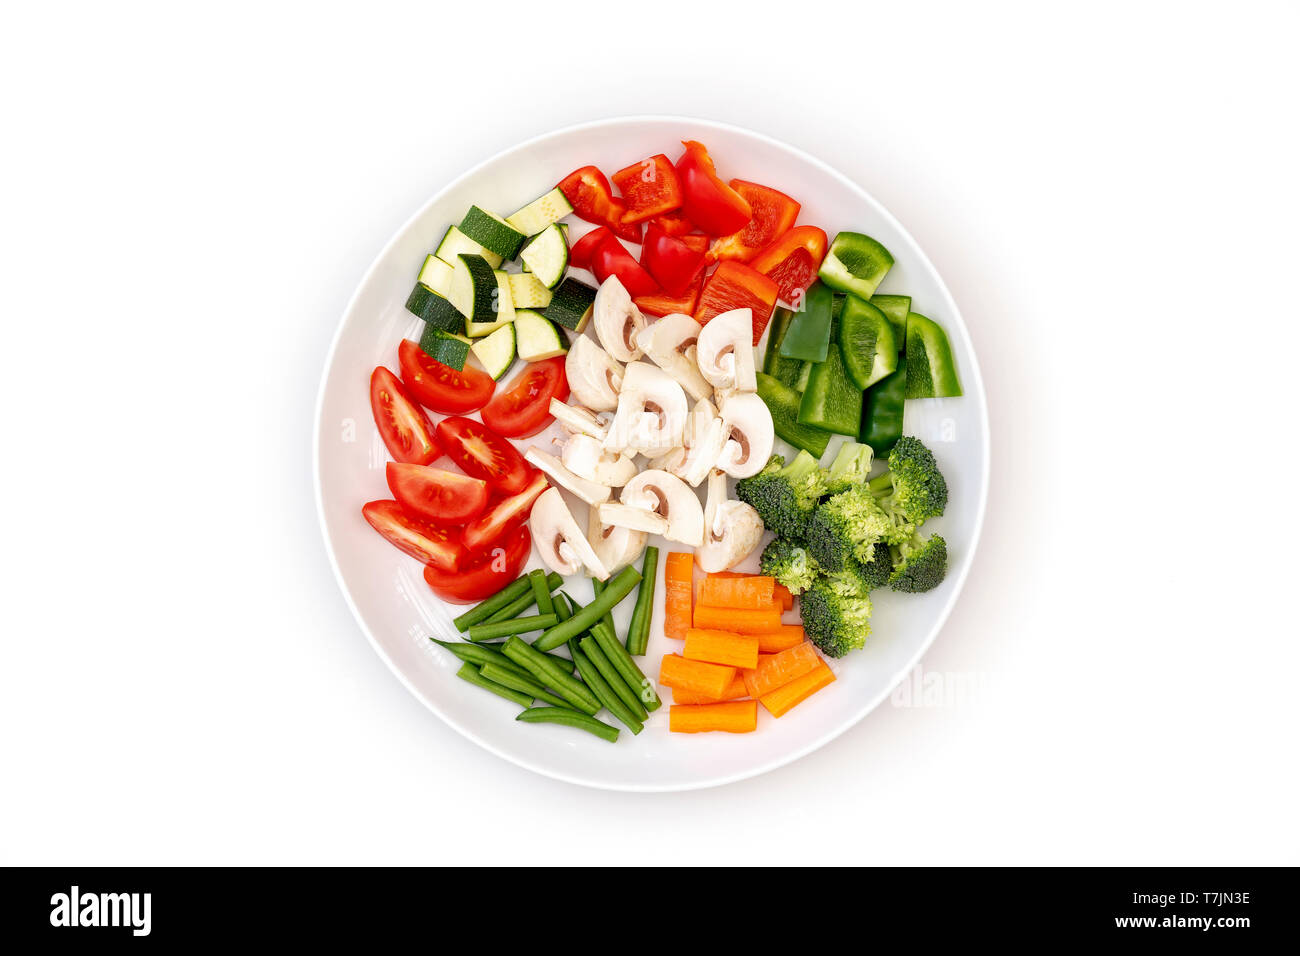 https://c8.alamy.com/comp/T7JN3E/chopped-fresh-vegetables-ready-for-stir-frying-arranged-on-white-plate-T7JN3E.jpg